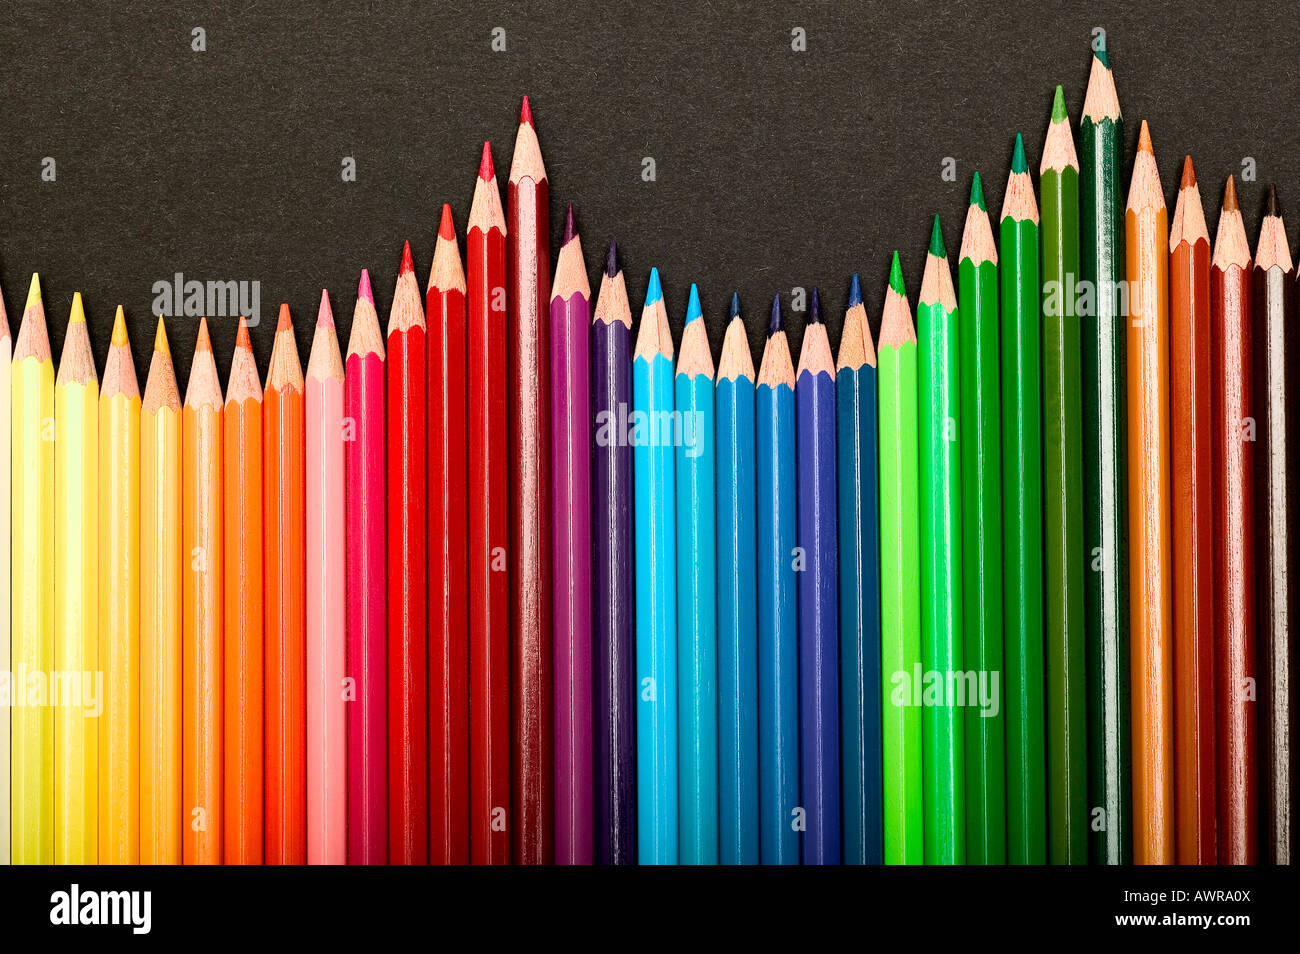 Stift Bleistift Holzfarbe Farbe Multi Regenbogen Farbe malen bunte  Unentschieden Versorgung Kunst kreative Modelleinrichtungen schreiben  Kreativität Stockfotografie - Alamy